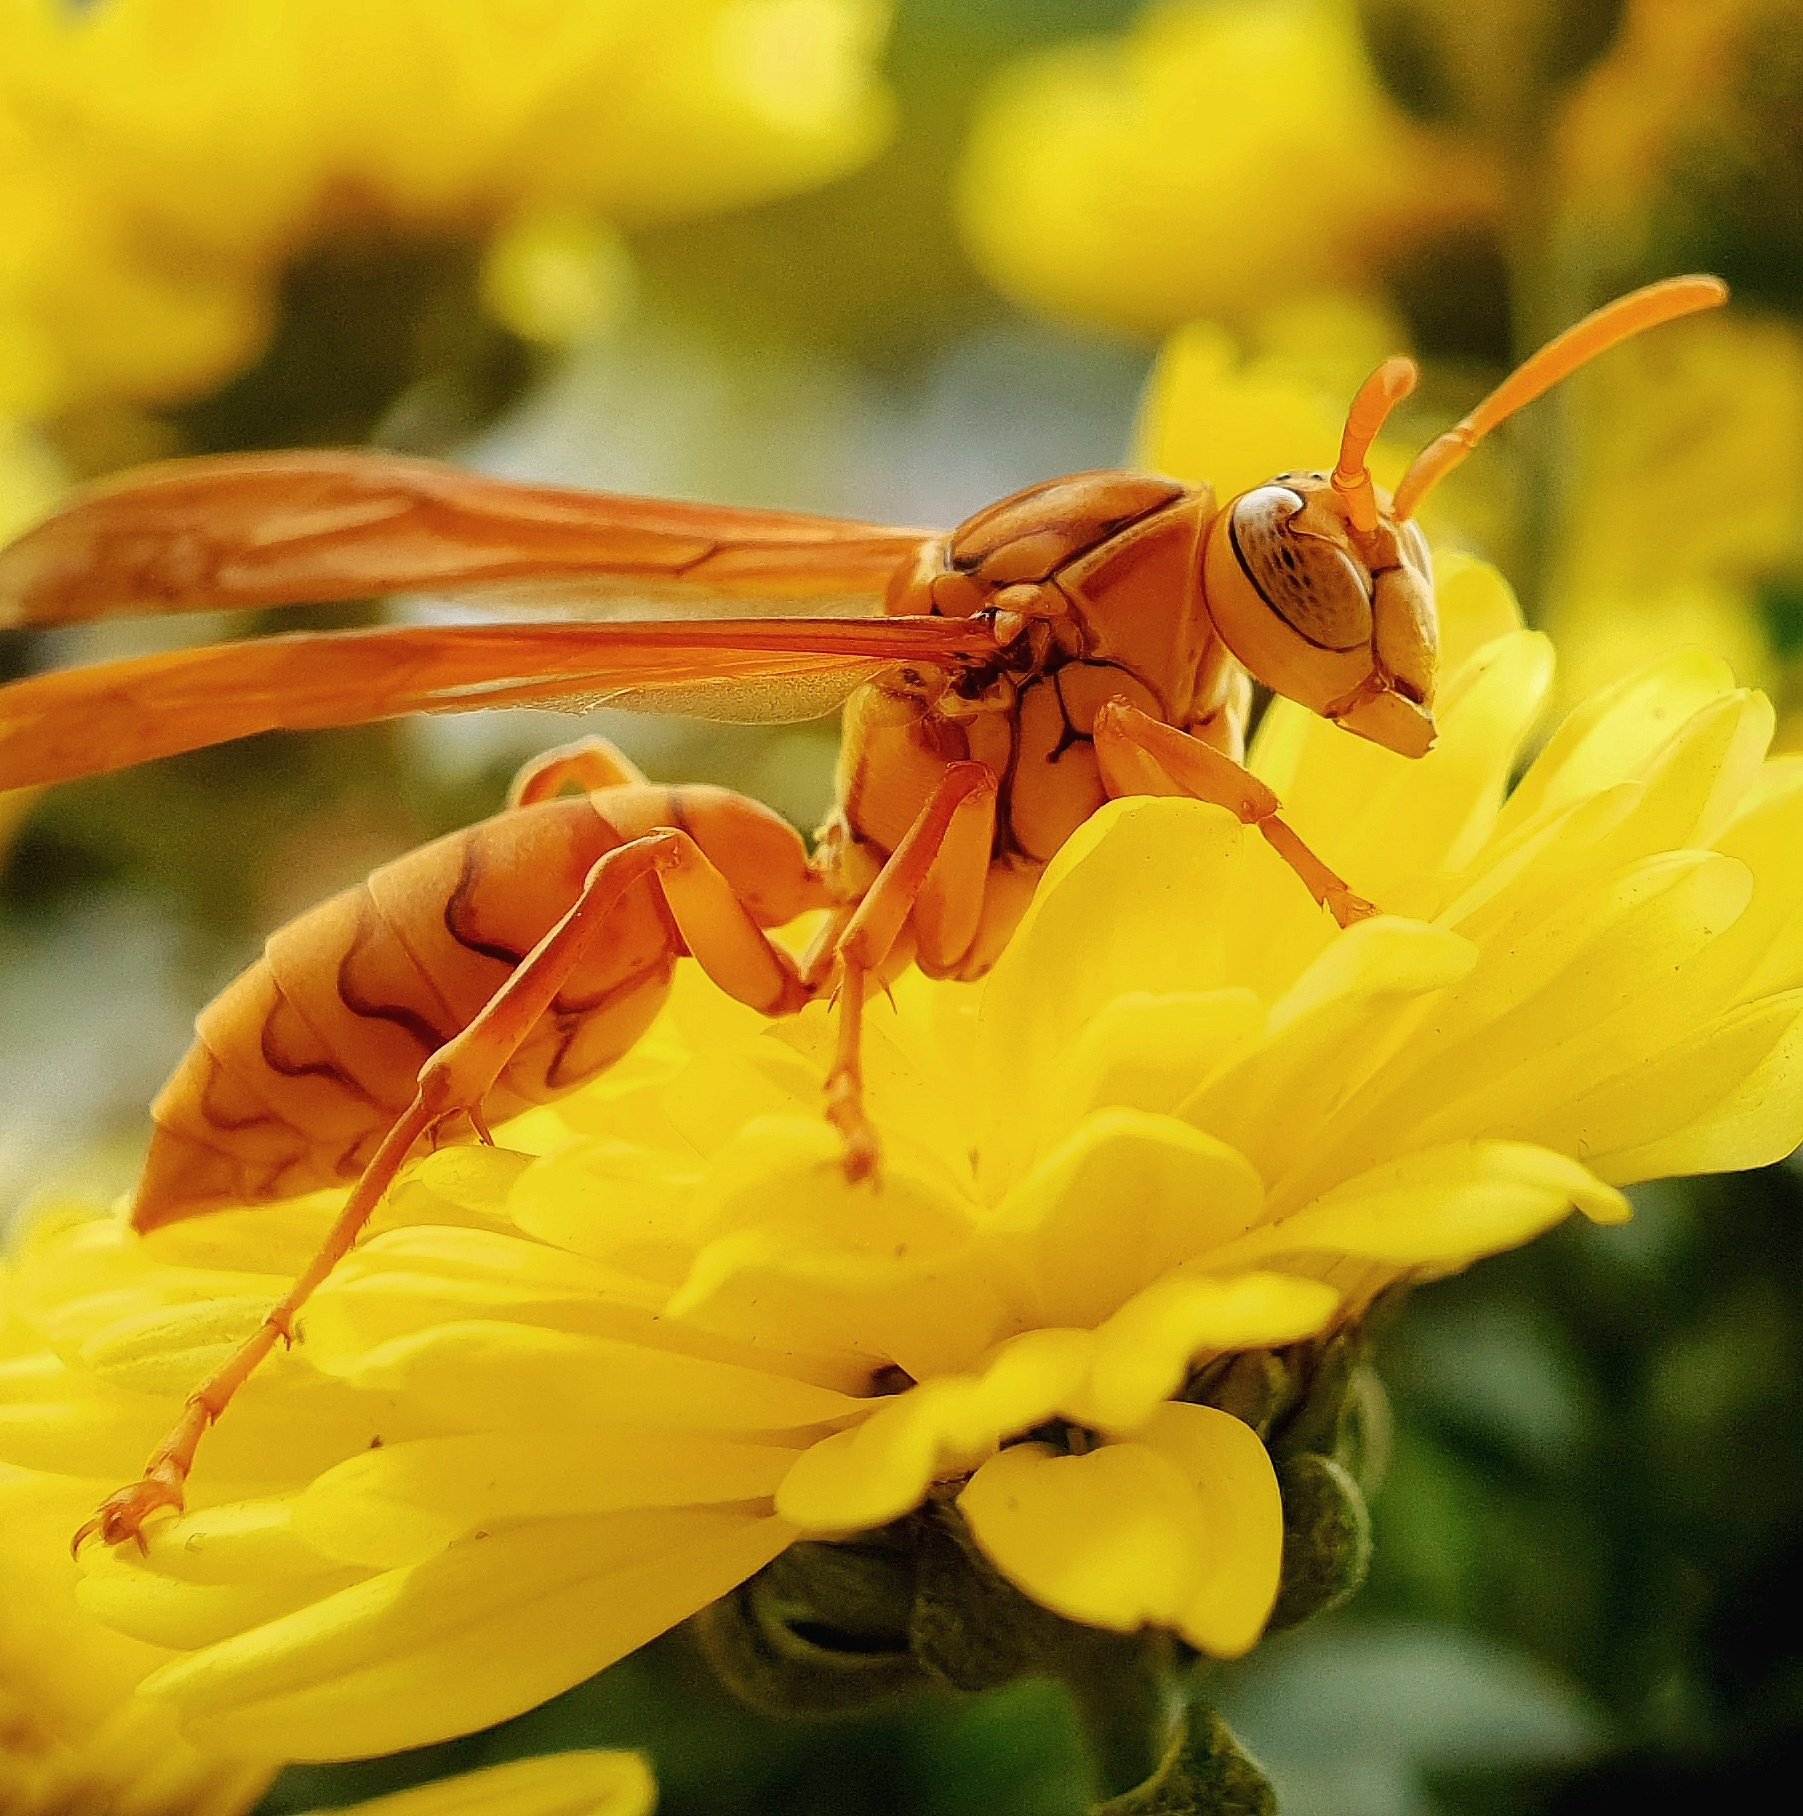 Hình ảnh con ong vàng trên hoa cúc